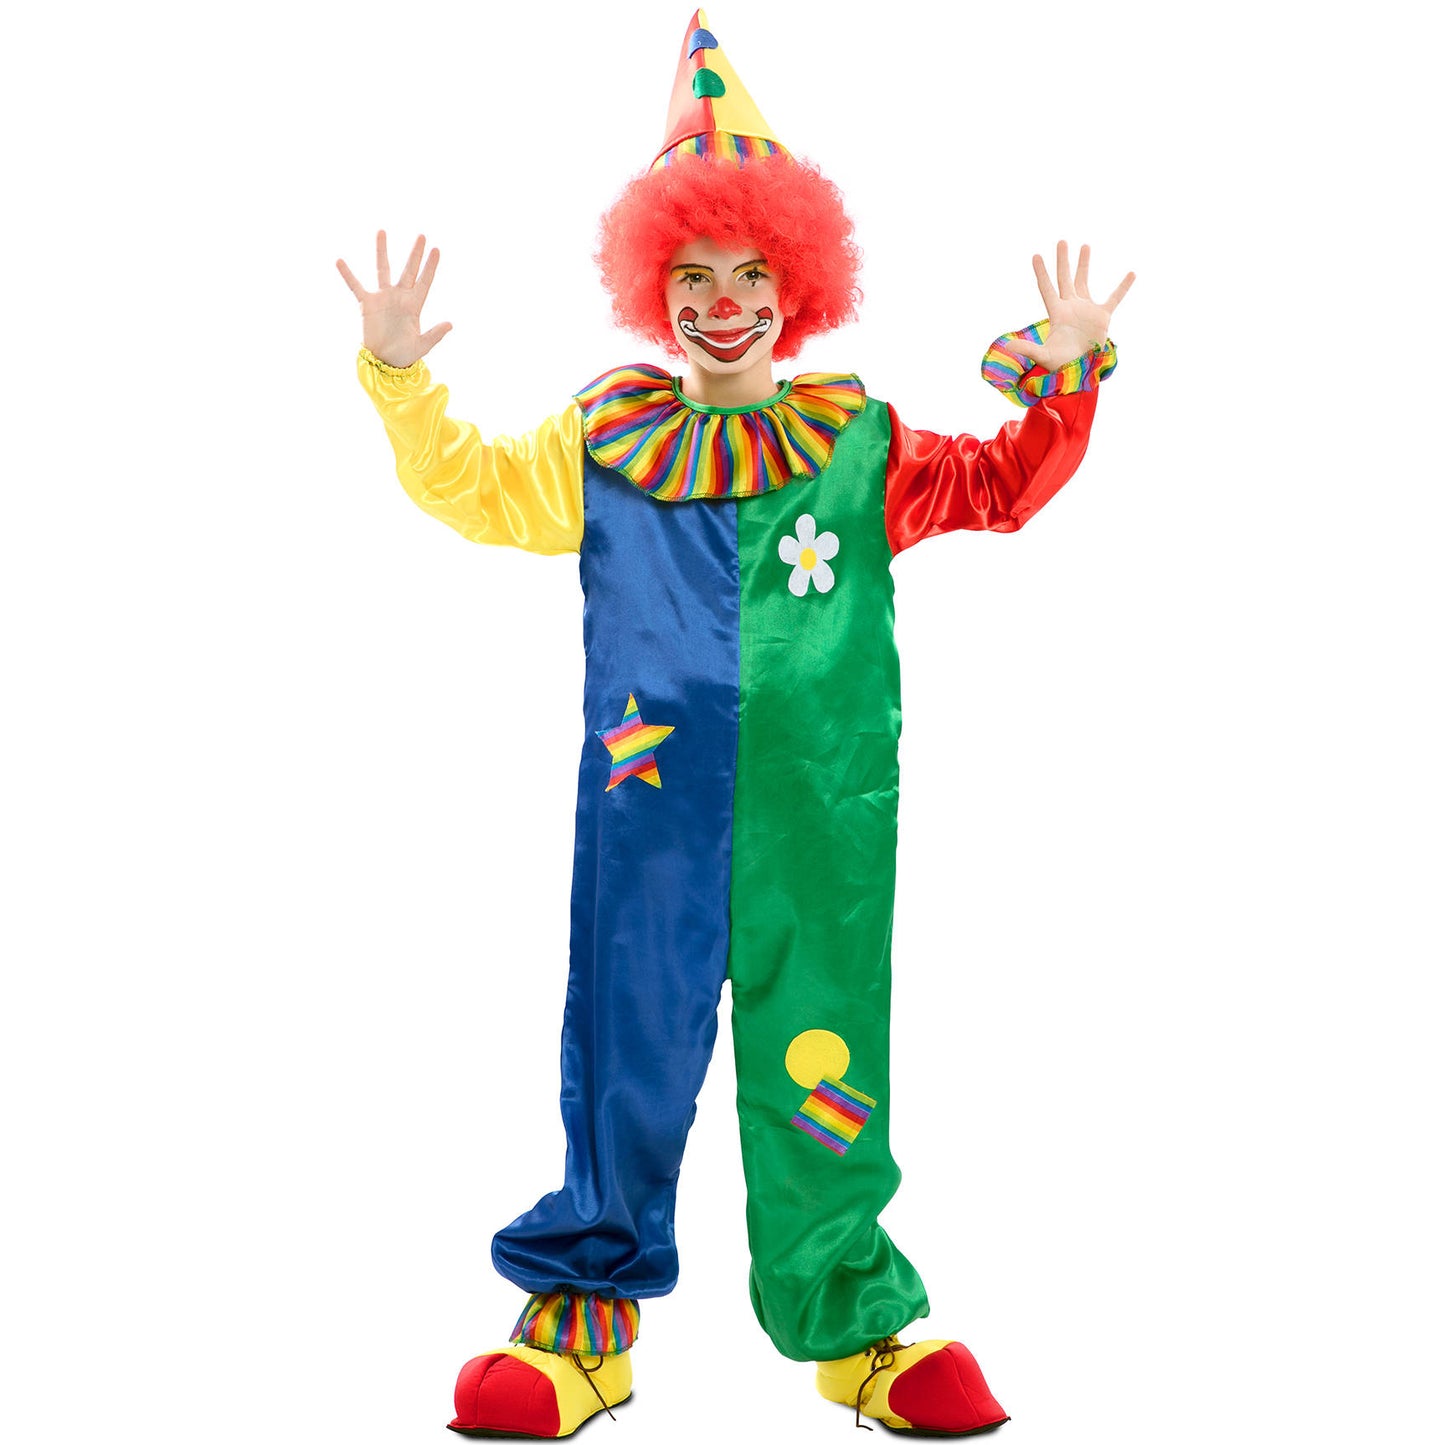 Acquista online il costume da clown Flip per bambino